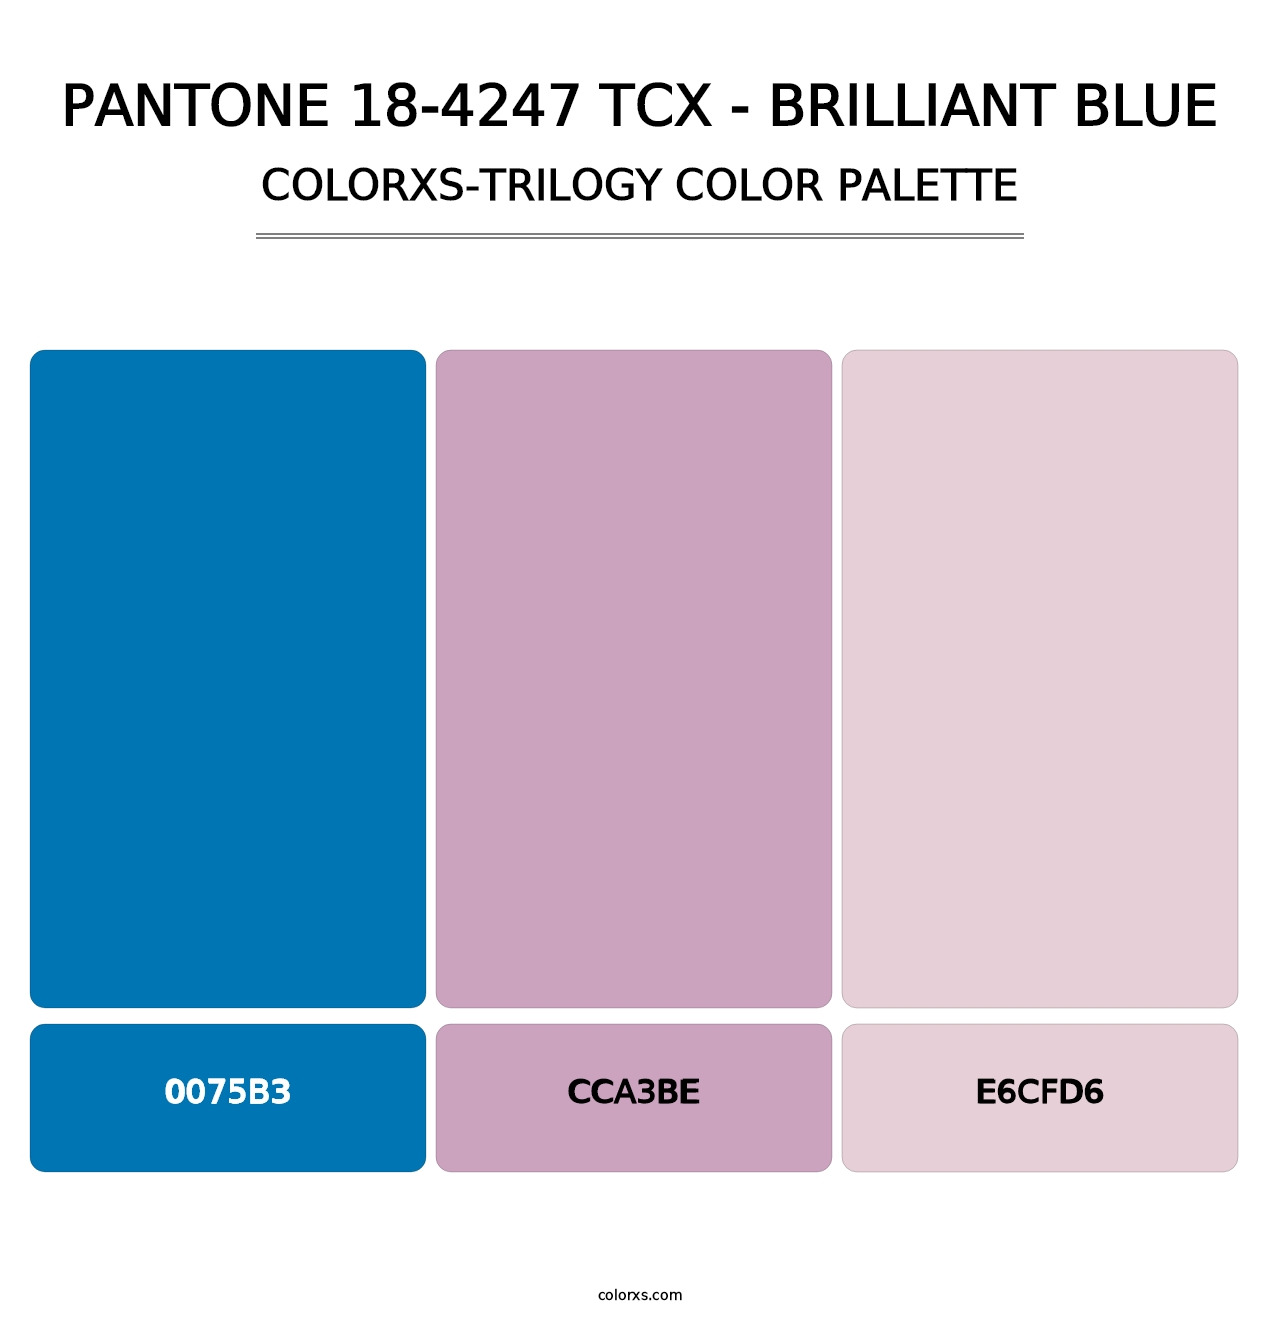 PANTONE 18-4247 TCX - Brilliant Blue - Colorxs Trilogy Palette